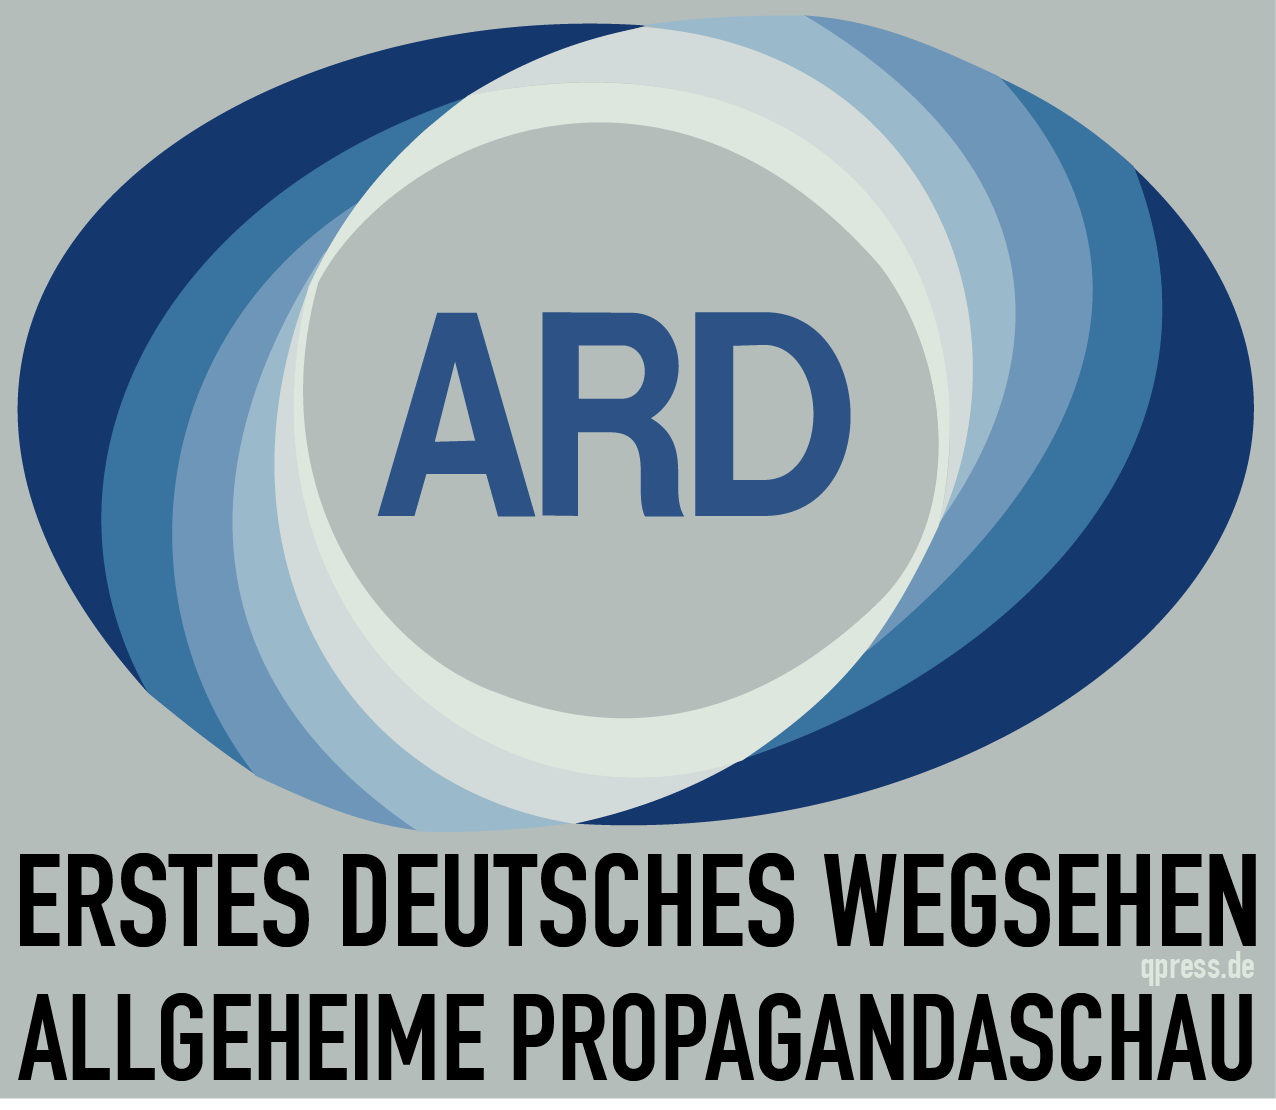 Erstes Deutsches Wegsehen Altes-ARD_Logo Deutsche Allgemeine Propagandaschau Staatspropaganda qpress